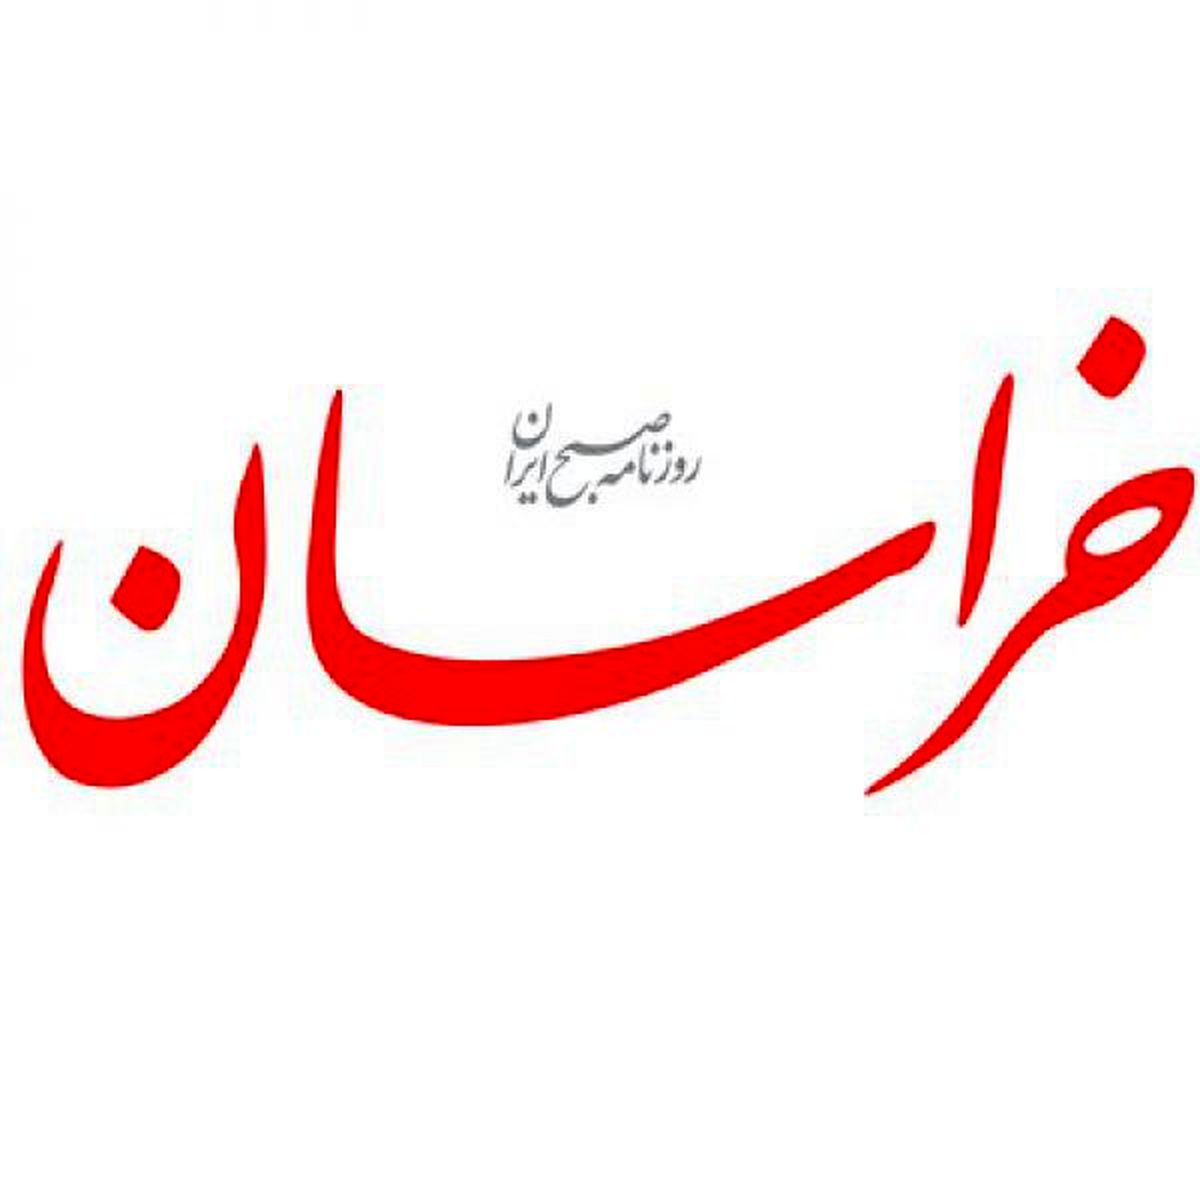 اهانت علنی و تعجب‌برانگیز روزنامه خراسان: الان با آمار زنان مطلقه و بیوه، تعدد زوجات یک واجب کفایی است!